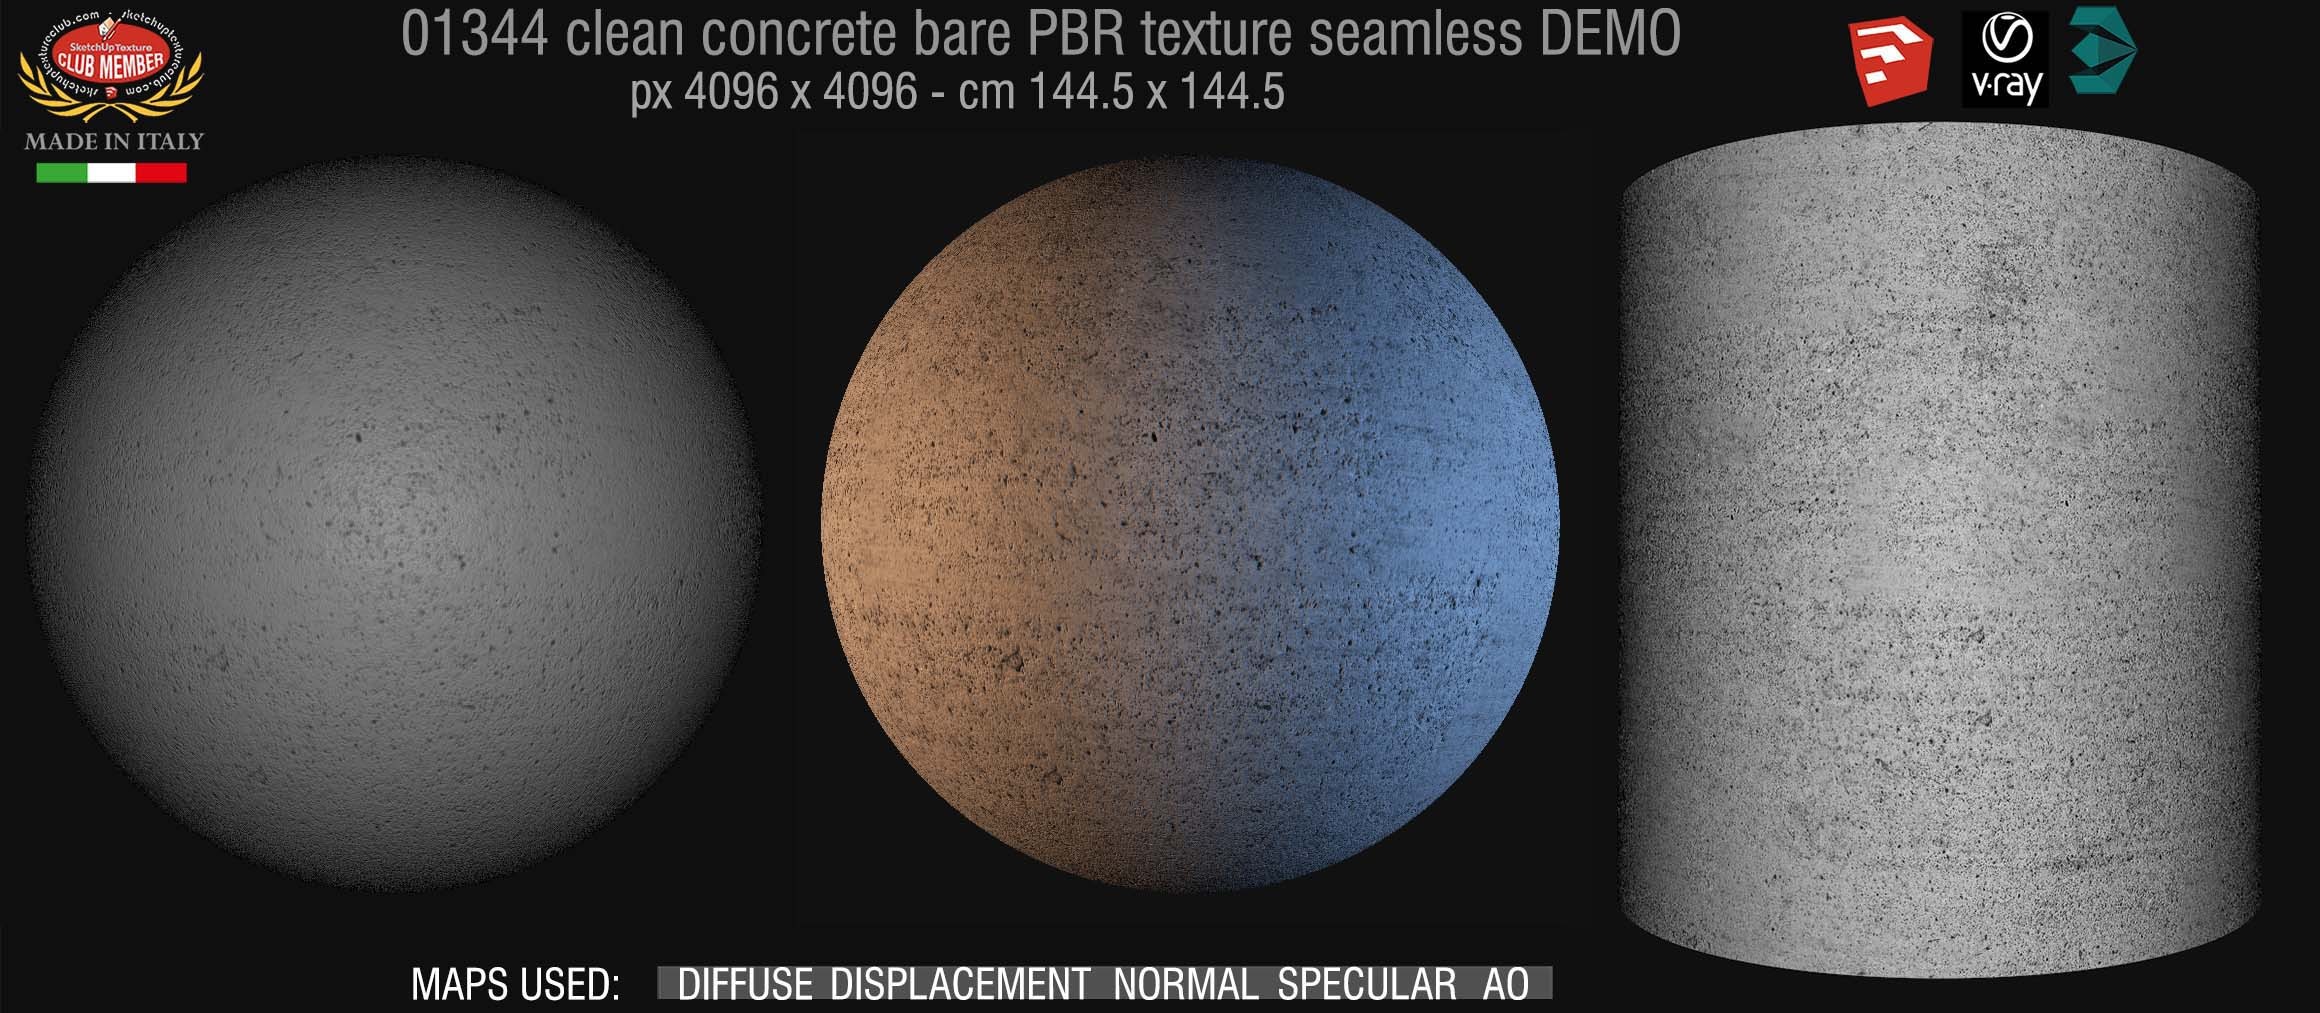 01344 concrete bare clean PBR texture seamless DEMO